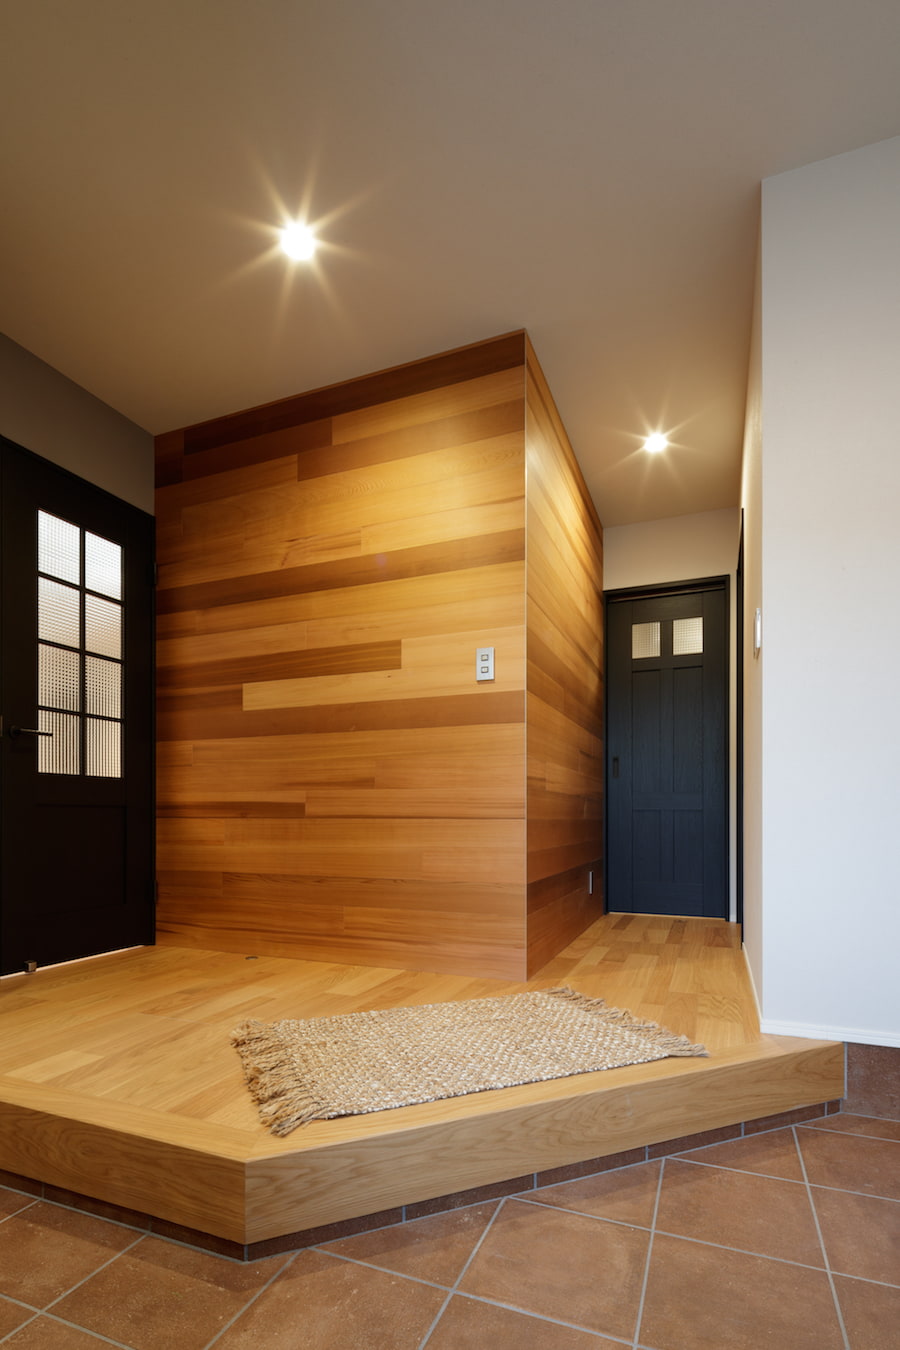 玄関の床材はエイジング加工のタイルを使い、アンティークな雰囲気